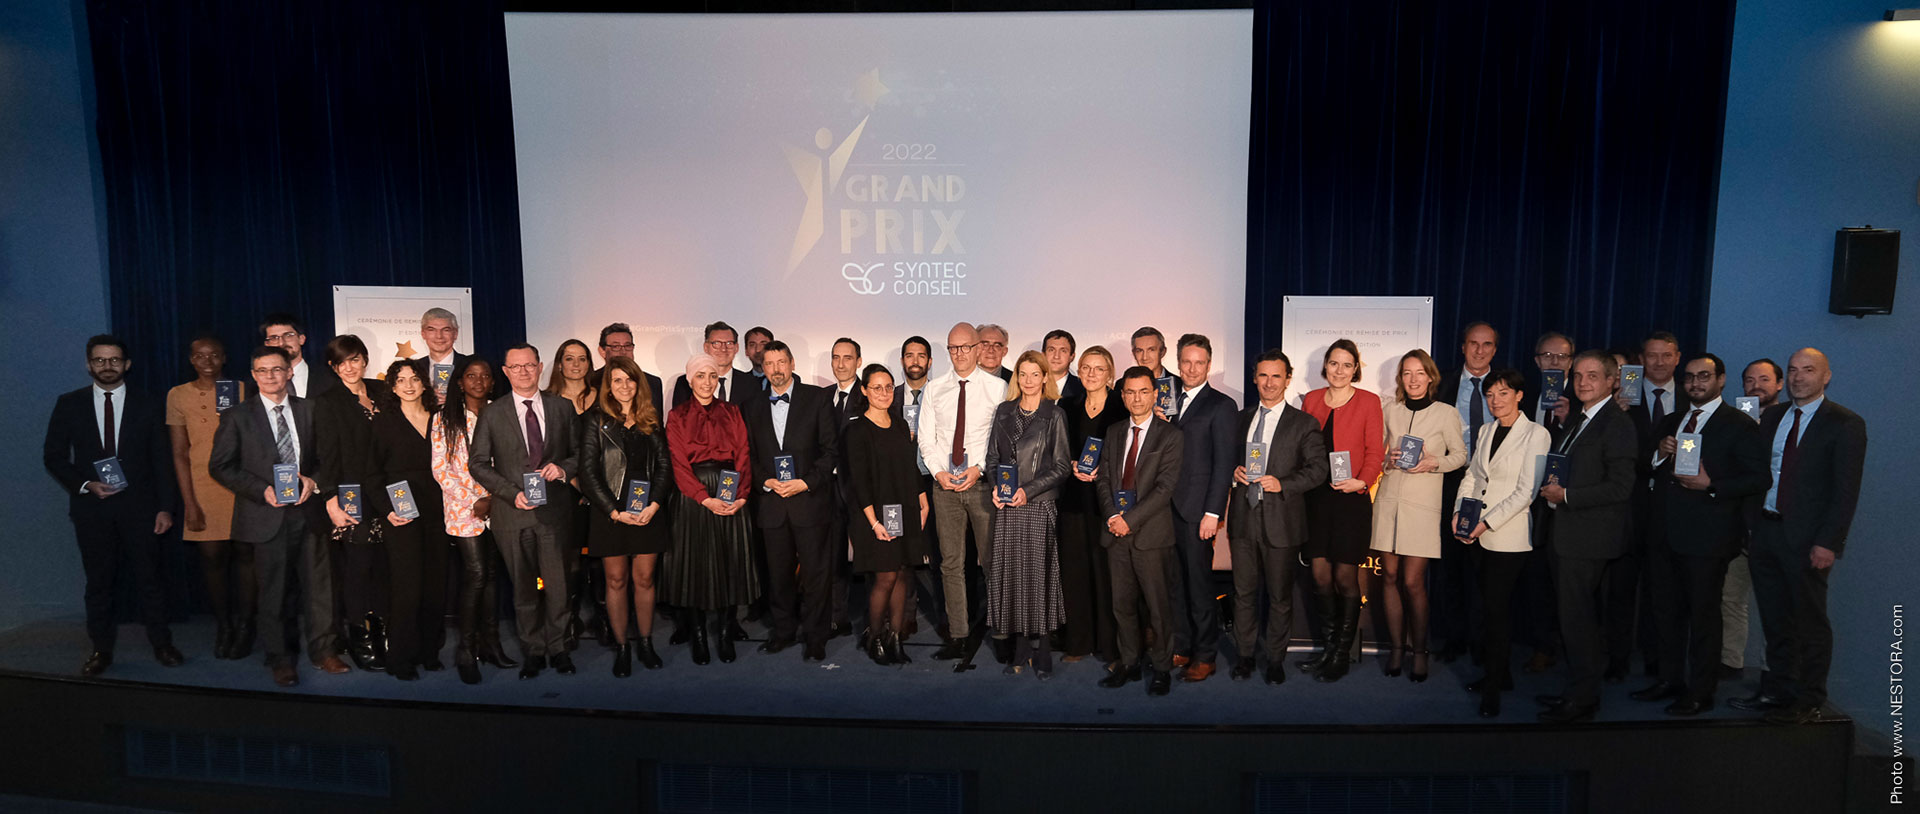 Cérémonie de remise de prix - Grand Prix Syntec Conseil 2022